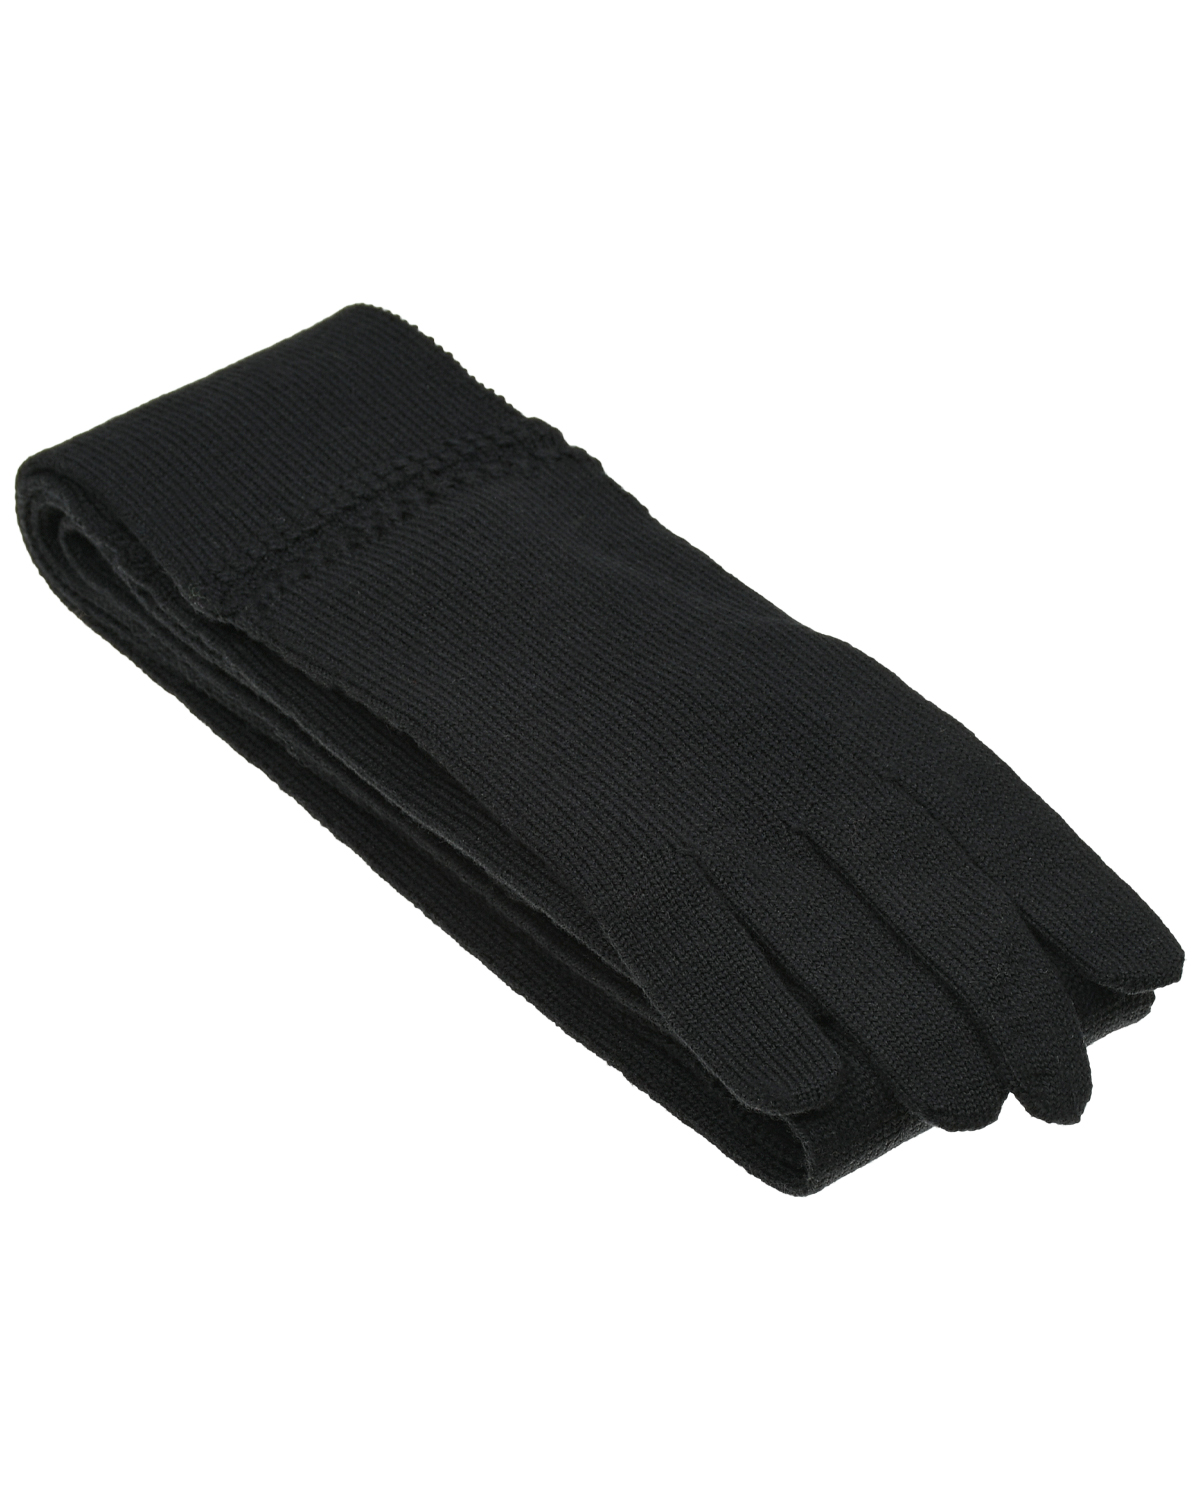 Черный тонкий шарф Vivetta, размер unica